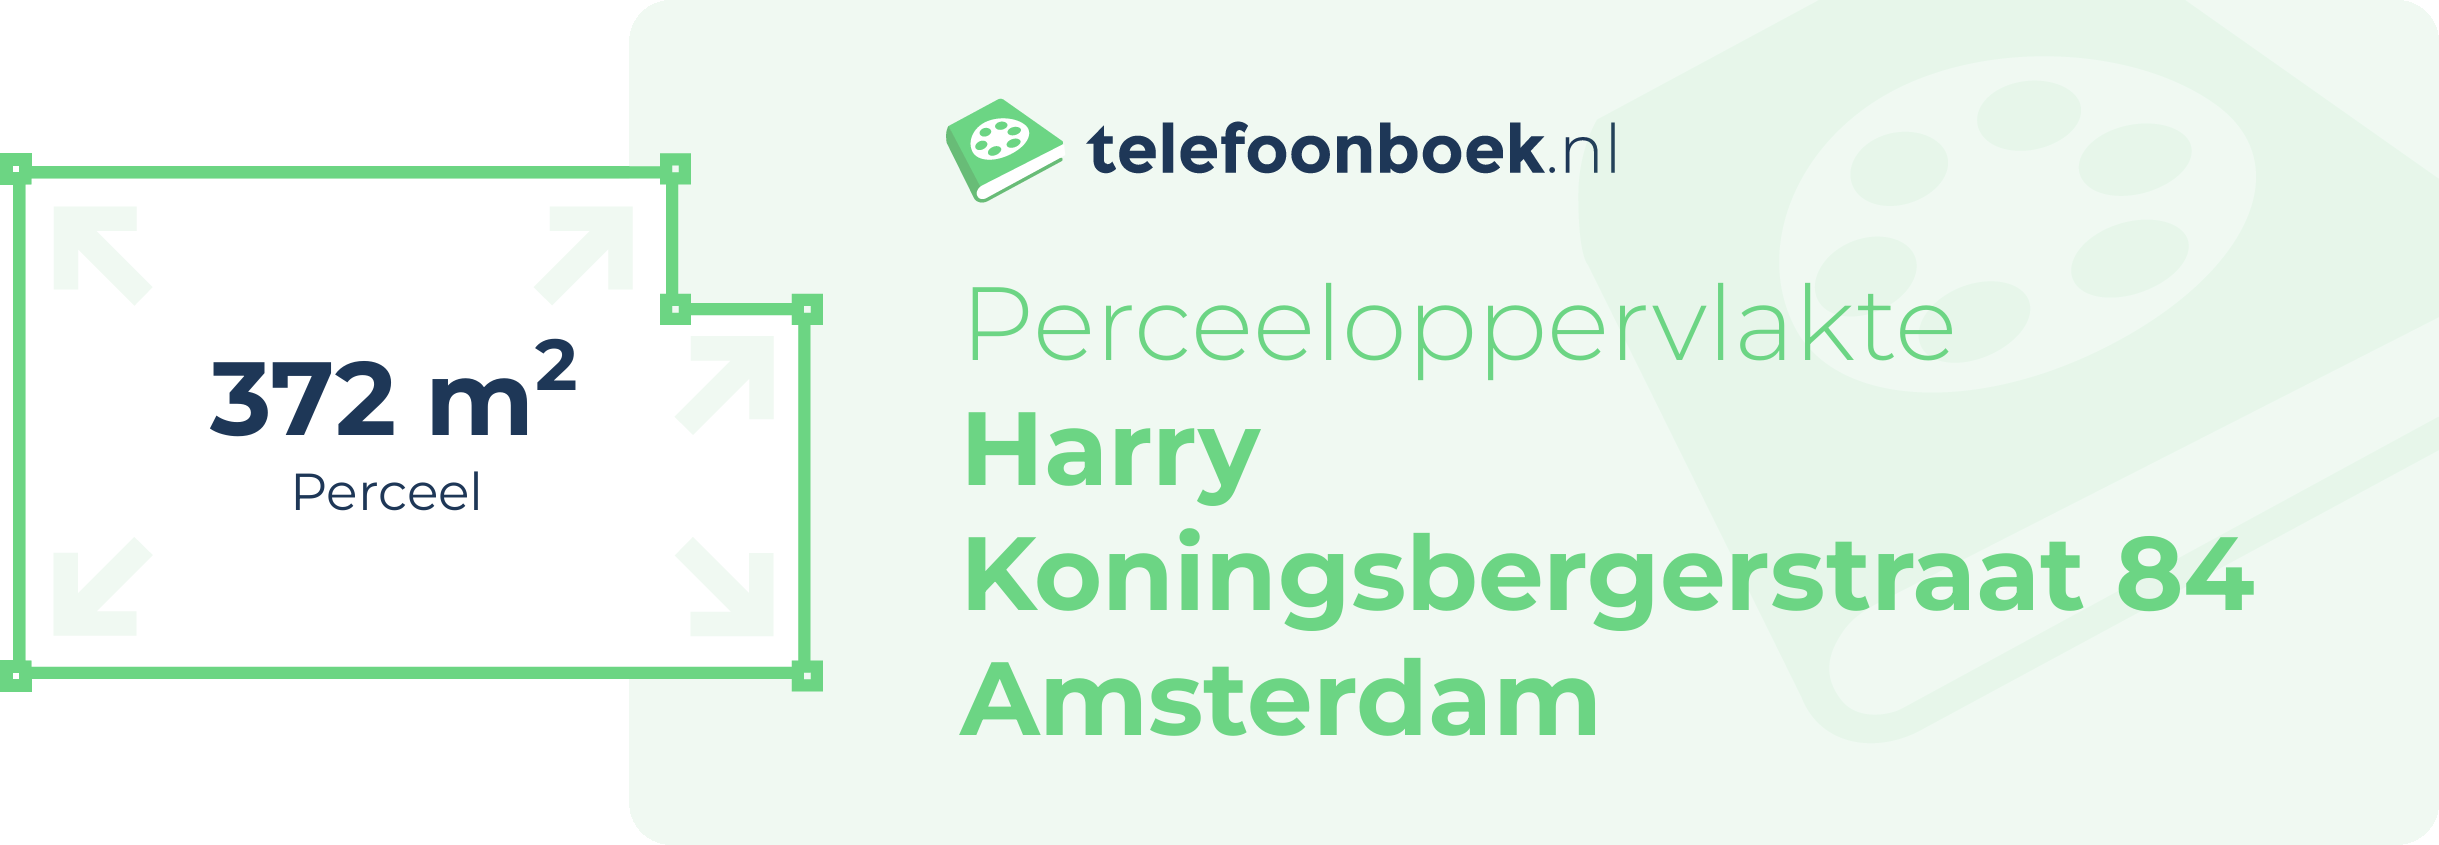 Perceeloppervlakte Harry Koningsbergerstraat 84 Amsterdam